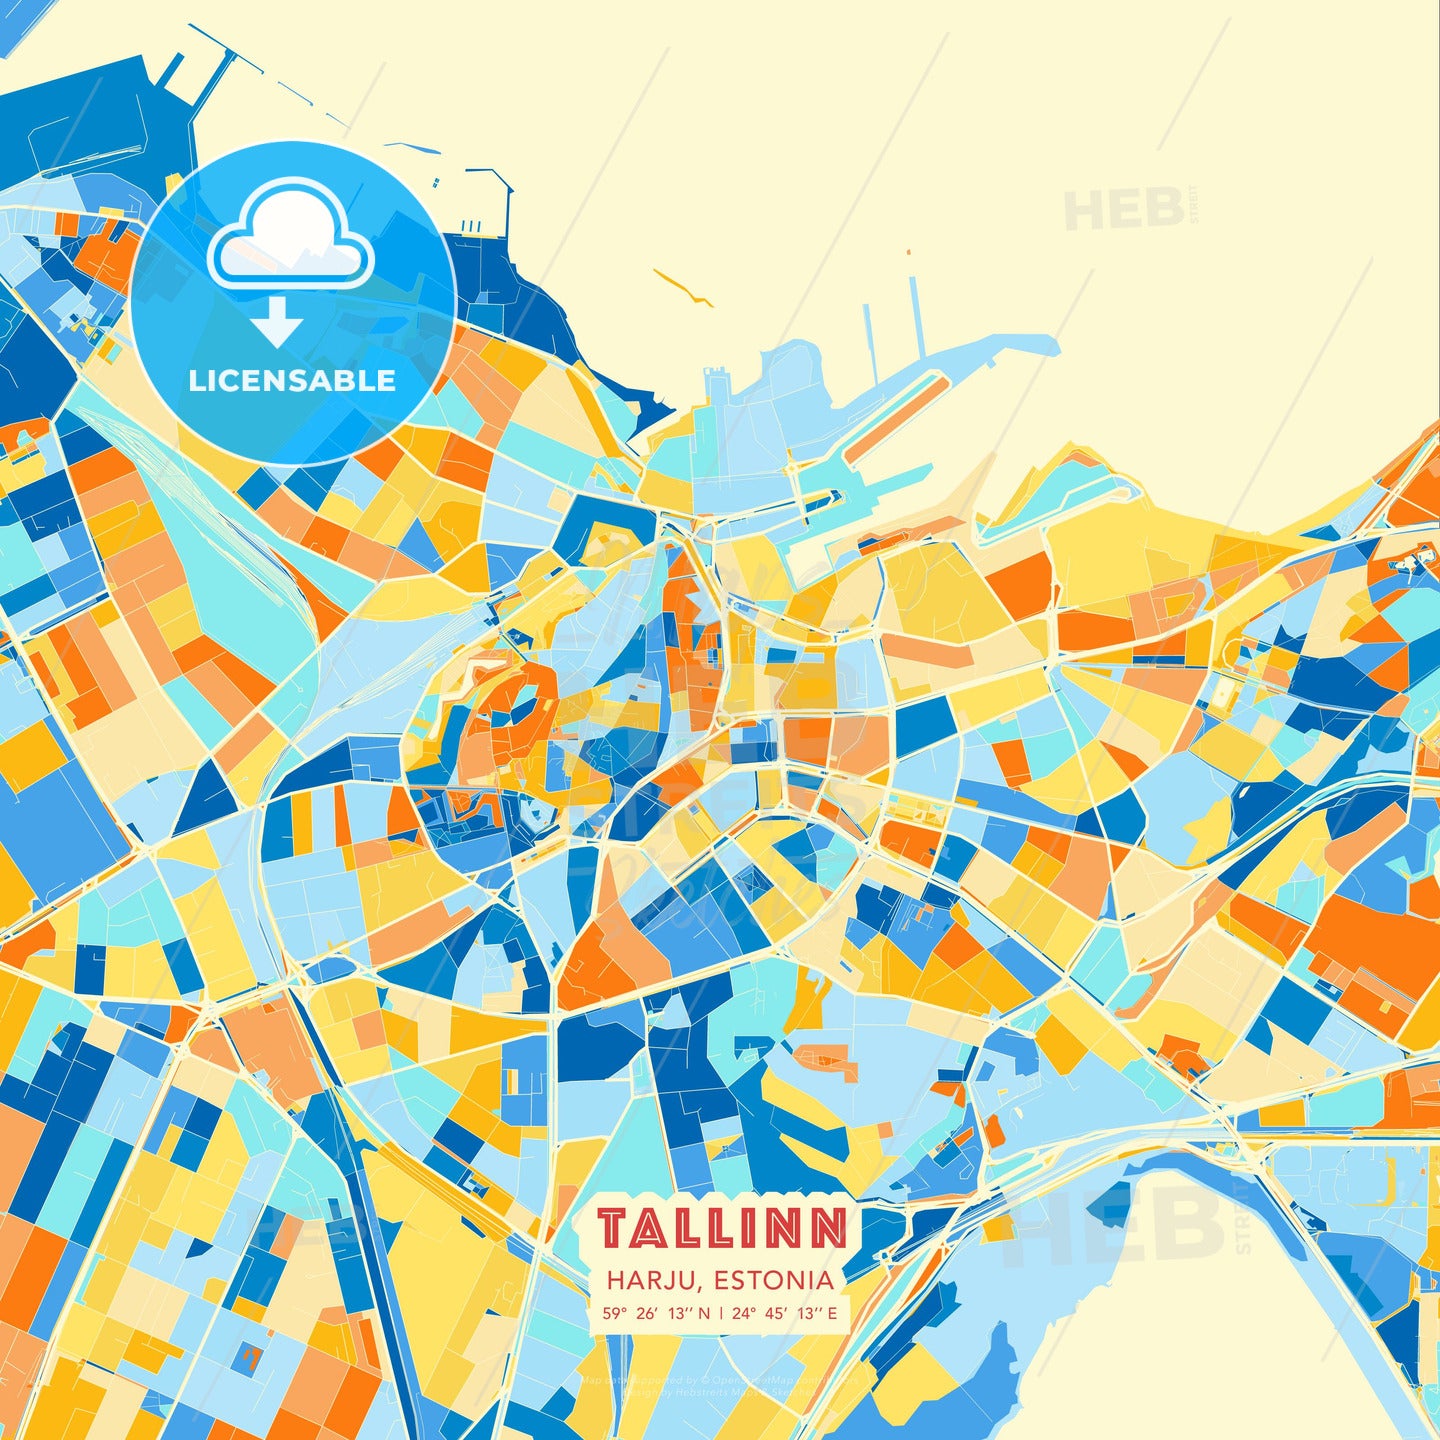 Tallinn, Harju, Estonia, map - HEBSTREITS Sketches